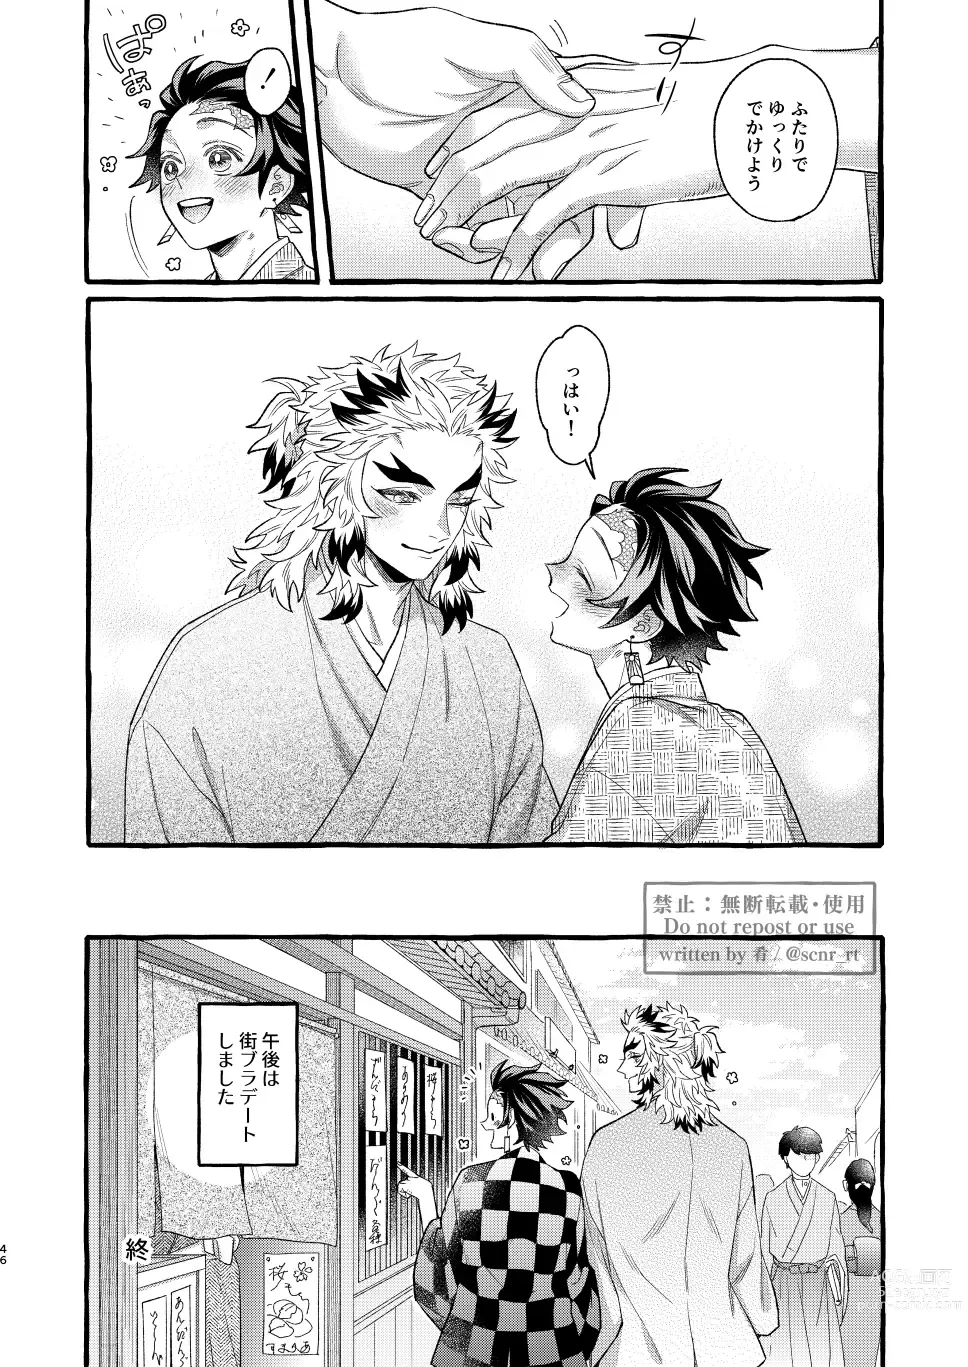 Page 45 of doujinshi Yoin